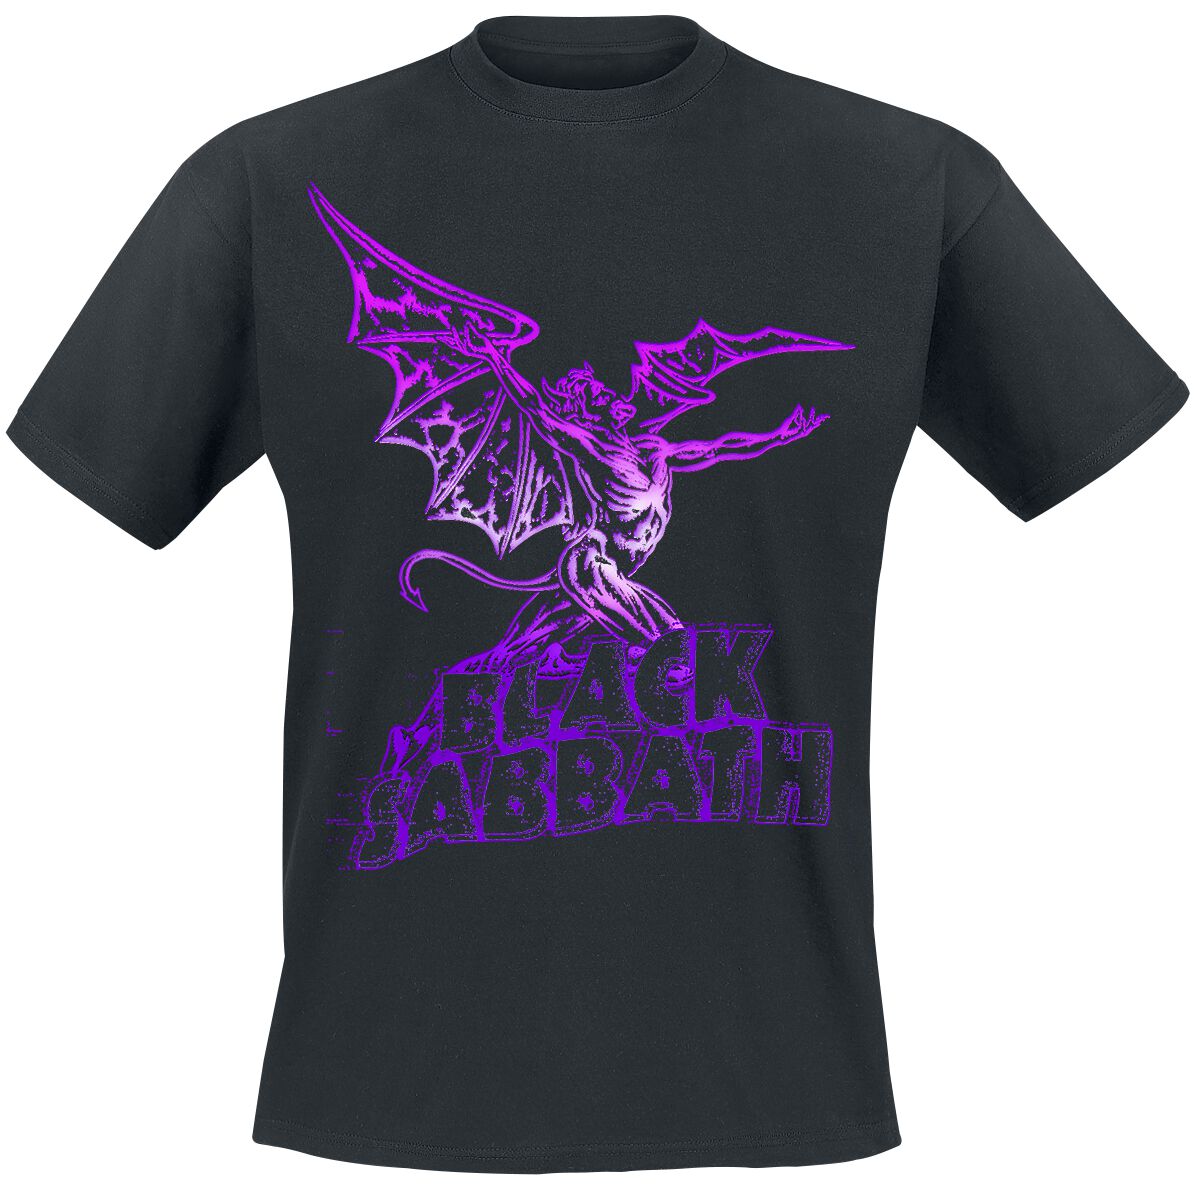 Black Sabbath T-Shirt - Gradiant Demon - S bis 3XL - für Männer - Größe XXL - schwarz  - Lizenziertes Merchandise!